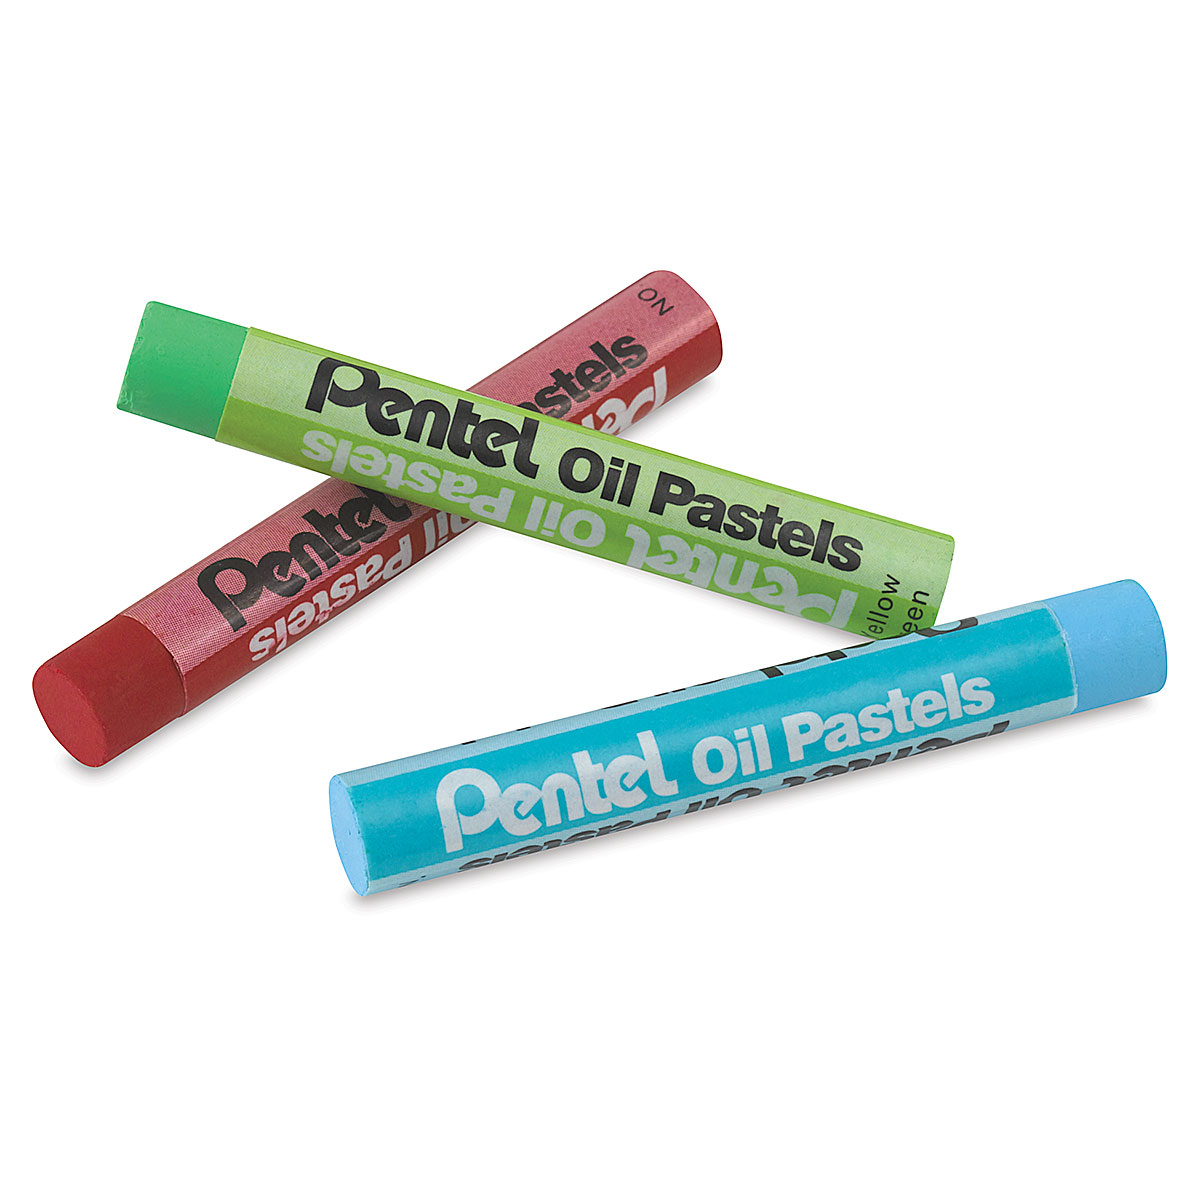 Pentel Oil Pastel Sets